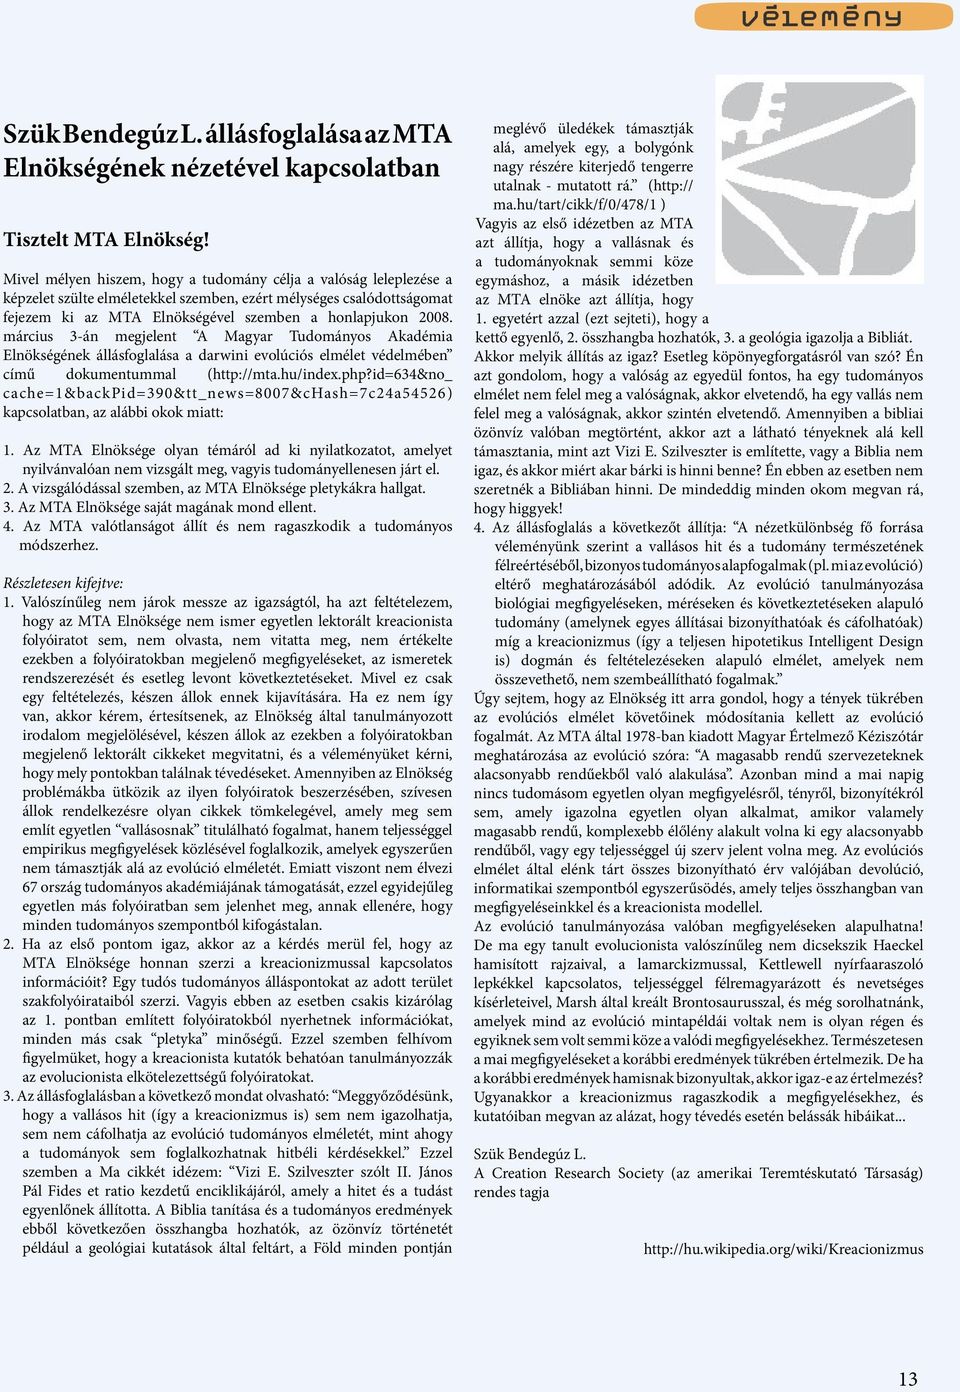 március 3-án megjelent A Magyar Tudományos Akadémia Elnökségének állásfoglalása a darwini evolúciós elmélet védelmében című dokumentummal (http://mta.hu/index.php?